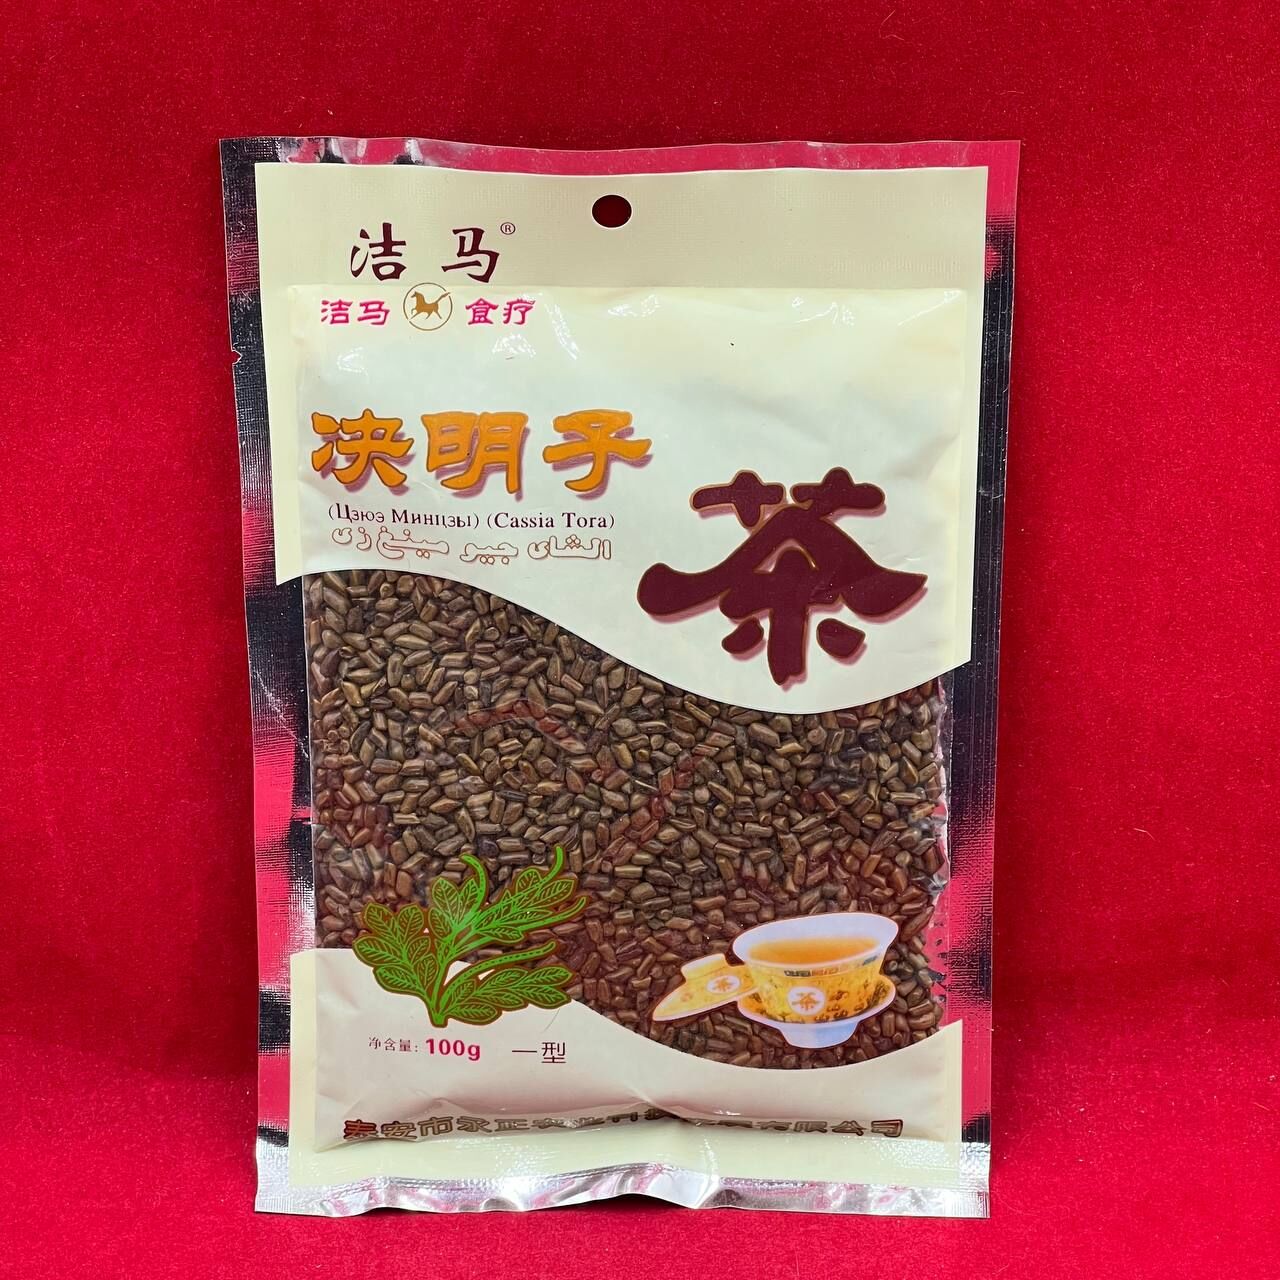 Китайские кофейные бобы (Цзюэ Минцзы) для очищения организма